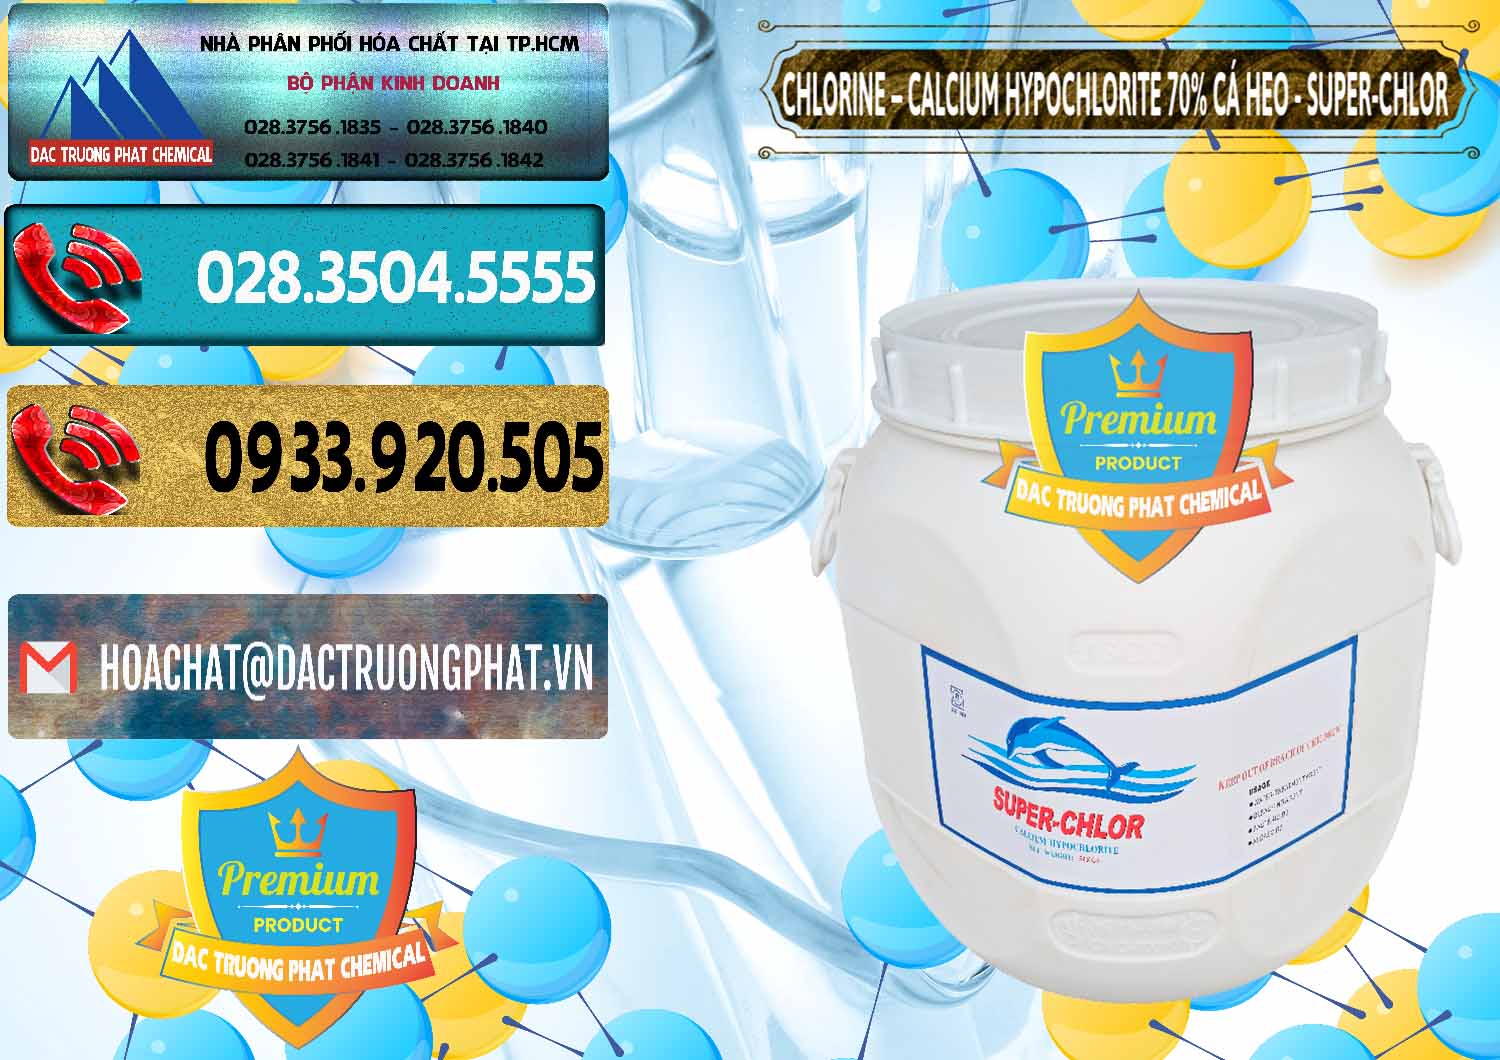 Đơn vị bán _ cung cấp Clorin - Chlorine Cá Heo 70% Super Chlor Trung Quốc China - 0058 - Công ty bán & phân phối hóa chất tại TP.HCM - hoachatdetnhuom.com